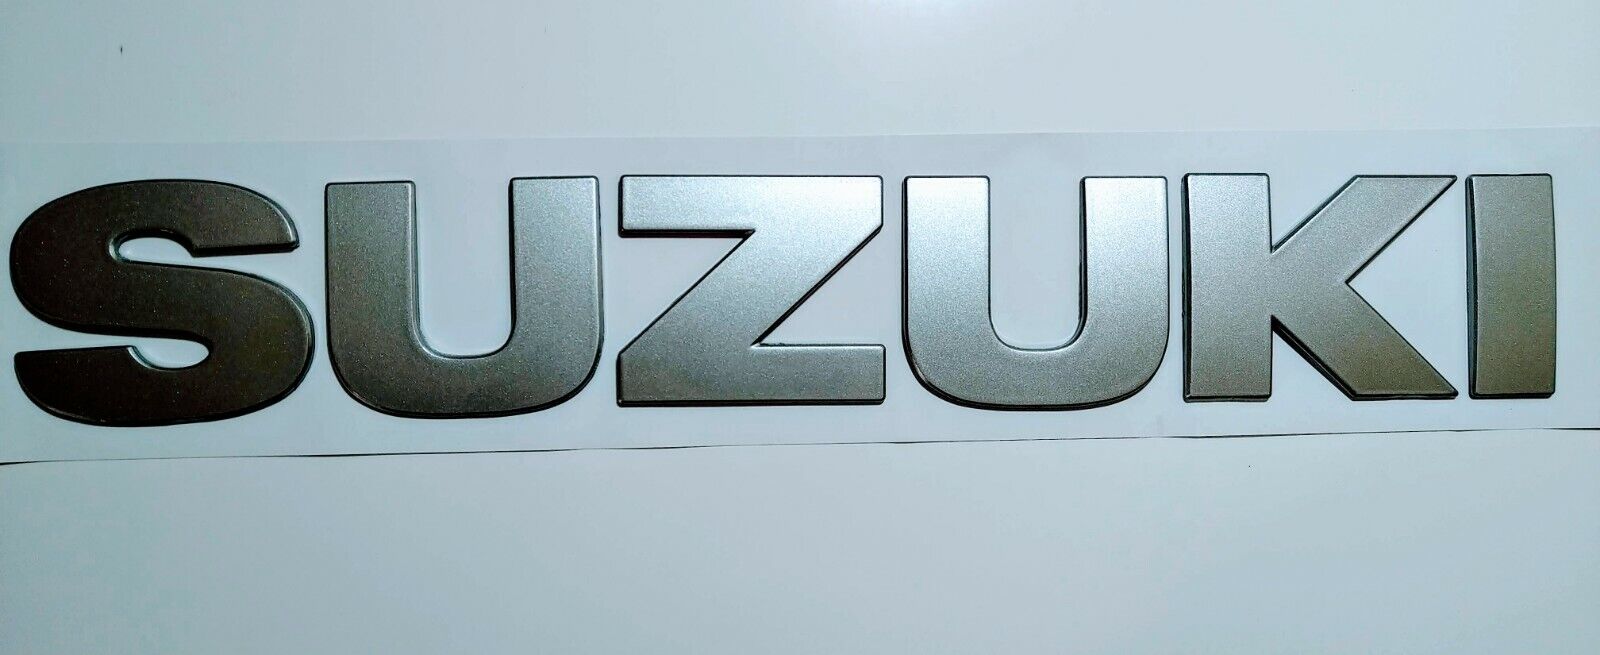 2006-2013 SUZUKI GRAND VITARA SPARE TIRE emblem lite Grey 22